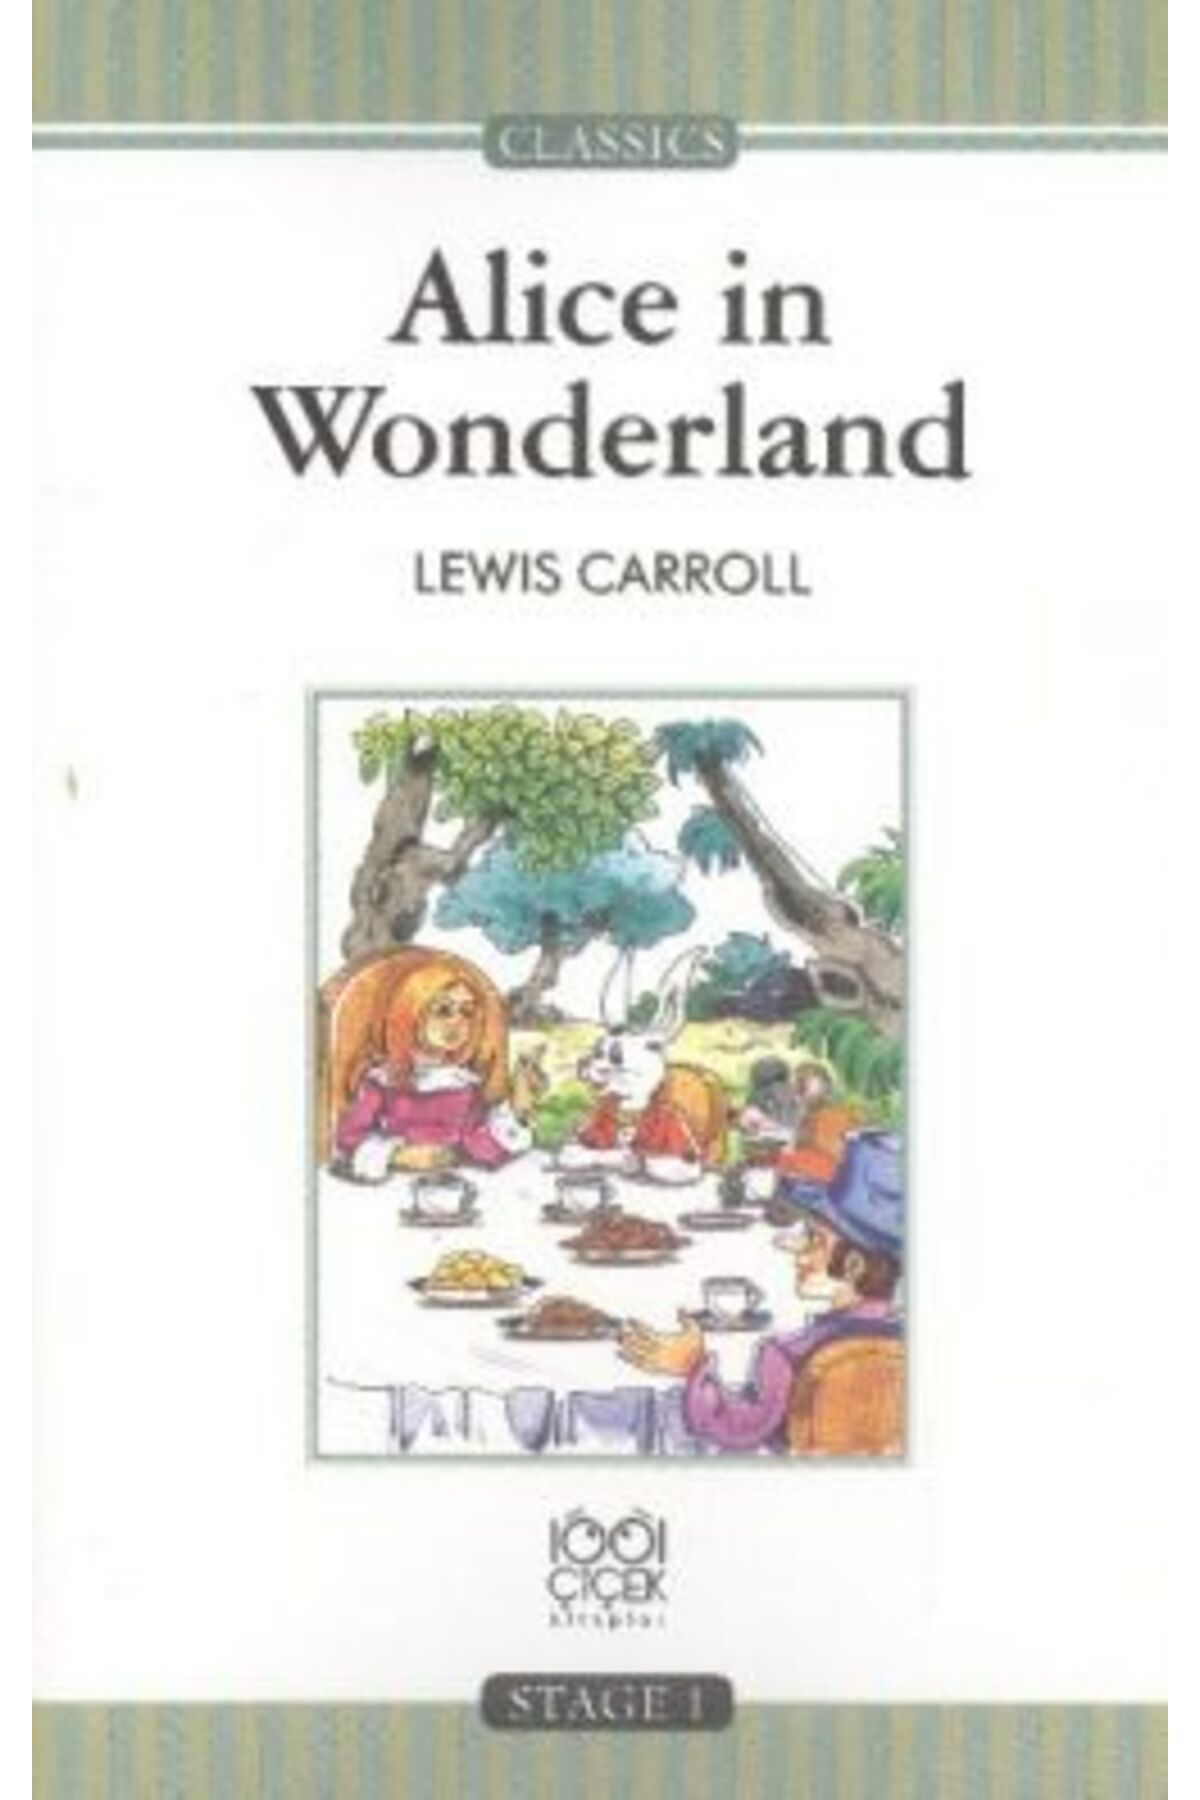 1001 Çiçek Kitaplar Alice in Wonderland (Stage 1)